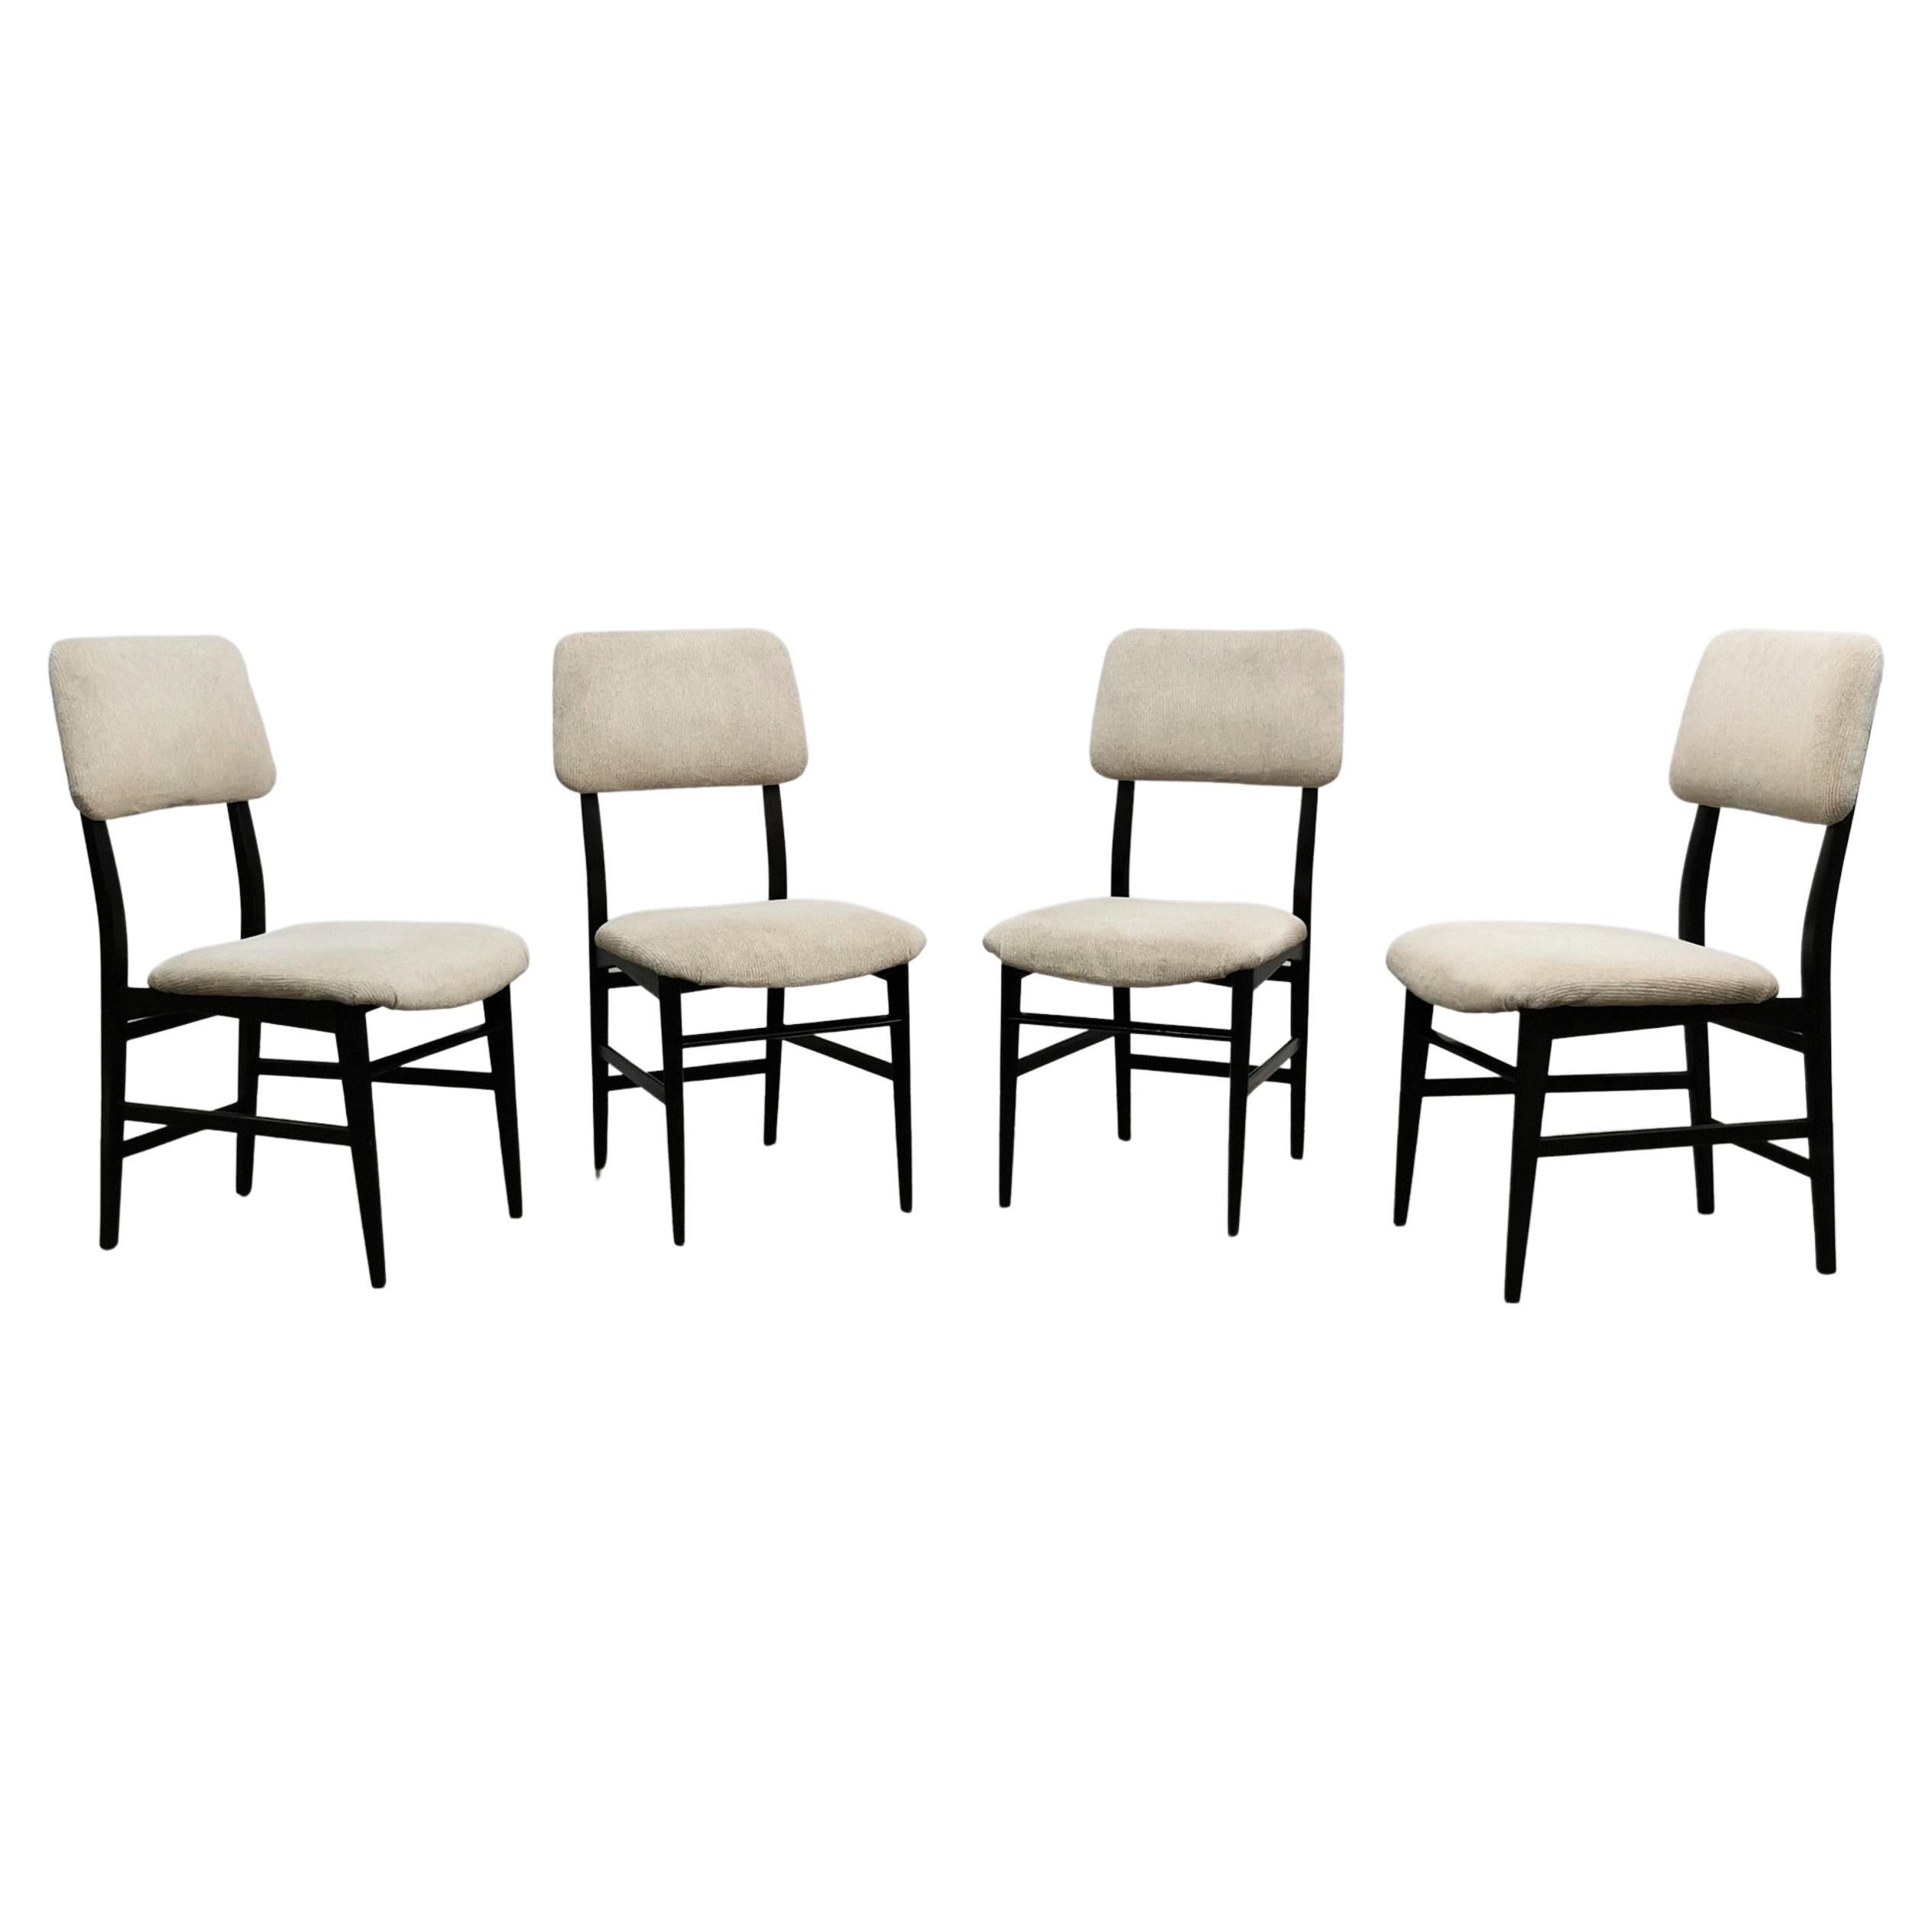 Satz von 4 Stühlen mit geschwungenen Formen, entworfen von dem Designer Edmondo Palutari und hergestellt von der italienischen Firma Dassi in den 1950er Jahren. Jeder einzelne Stuhl war aus dunklem Holz gefertigt, Sitzfläche und Rückenlehne mit